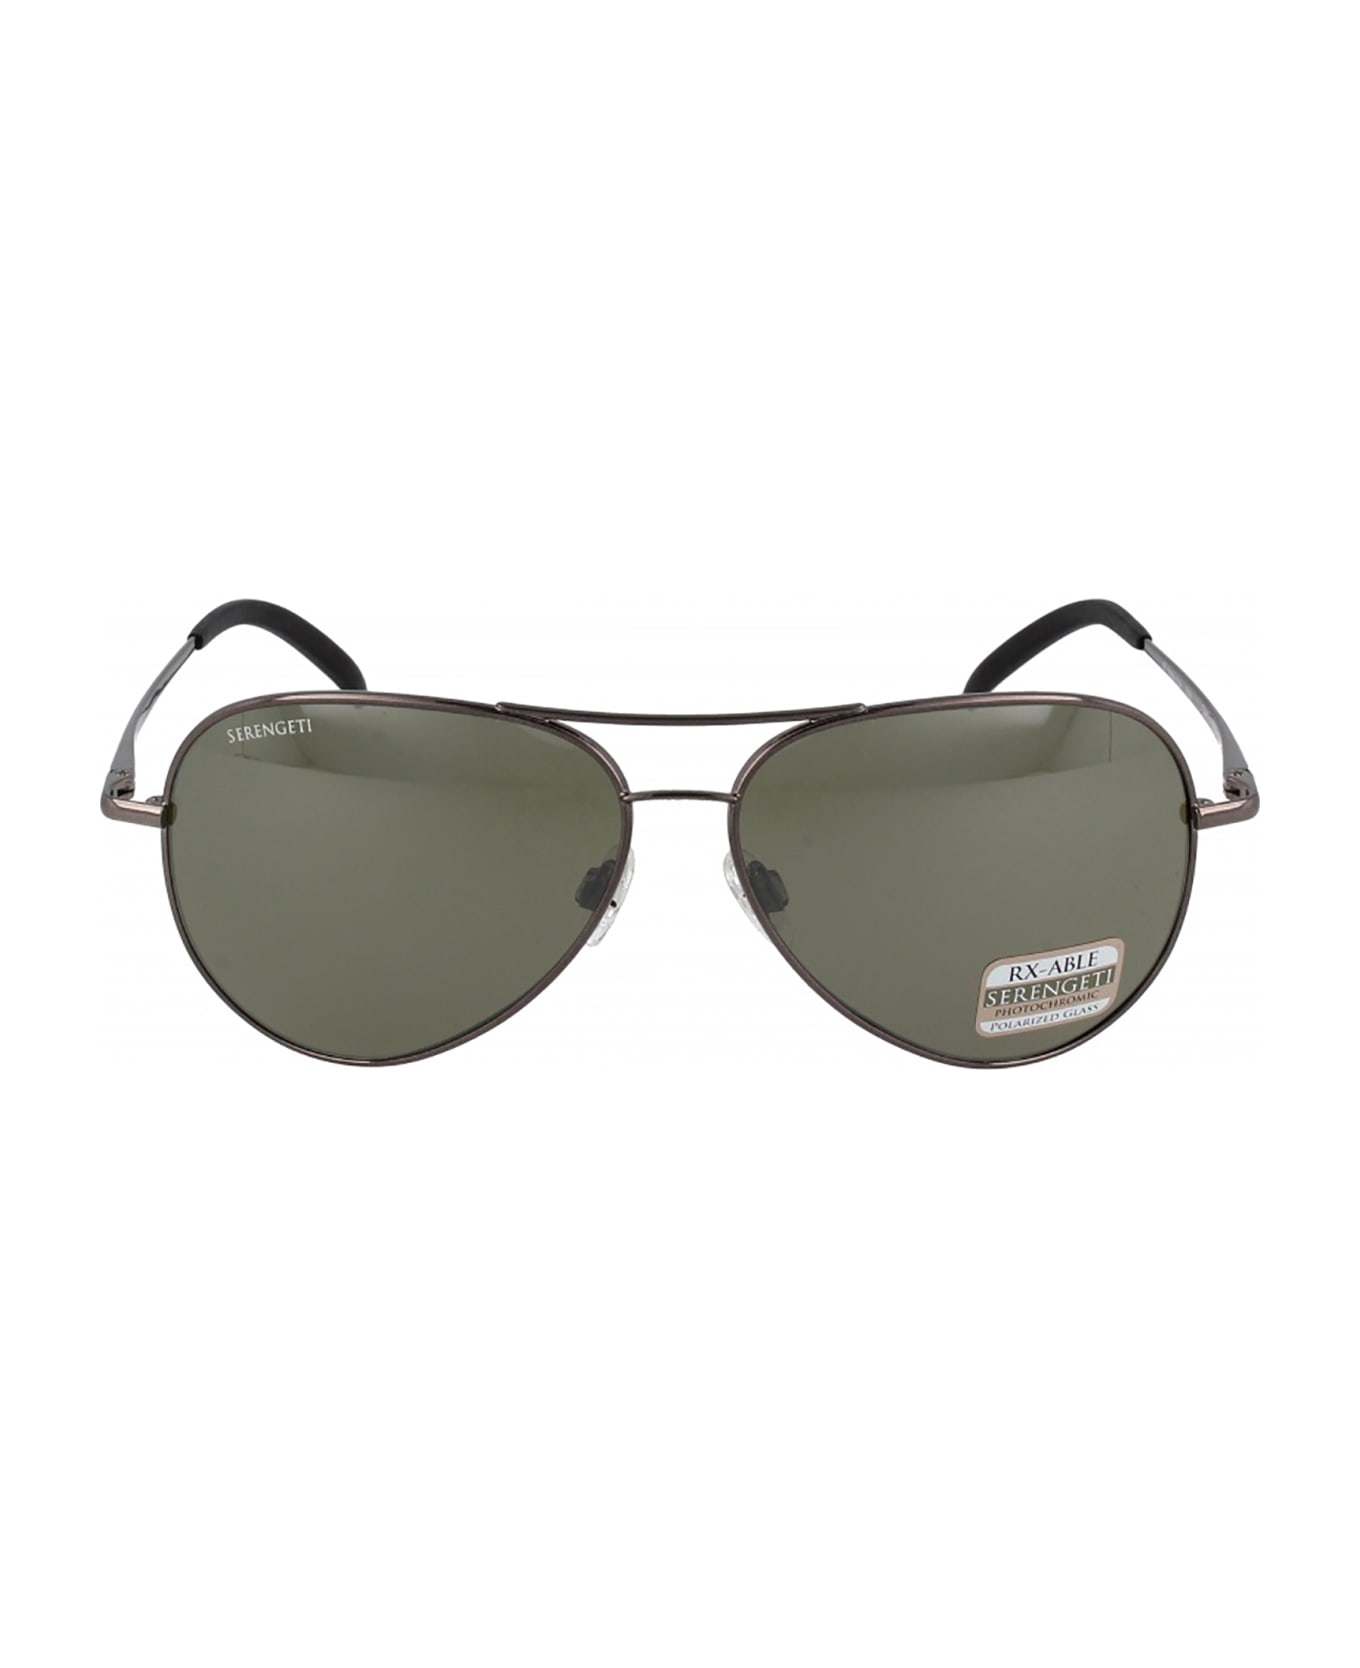 Serengeti Eyewear CARRARA GUNMETAL SHINY / MINER Sunglasses - Carrara サングラス